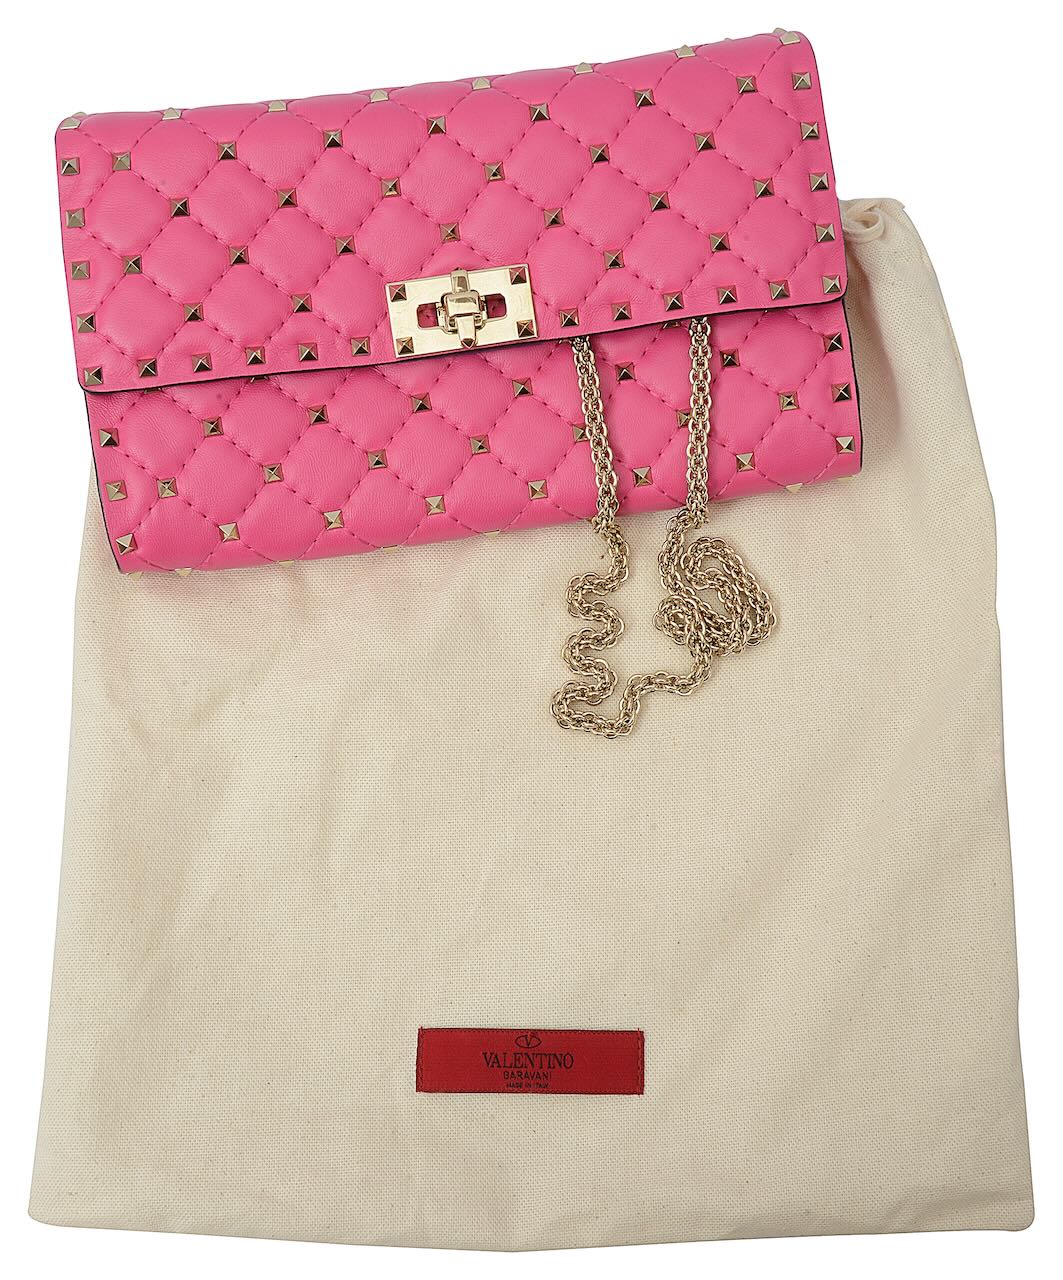 A pink studded shoulder bag by Valentino Garavani - Image 2 of 2